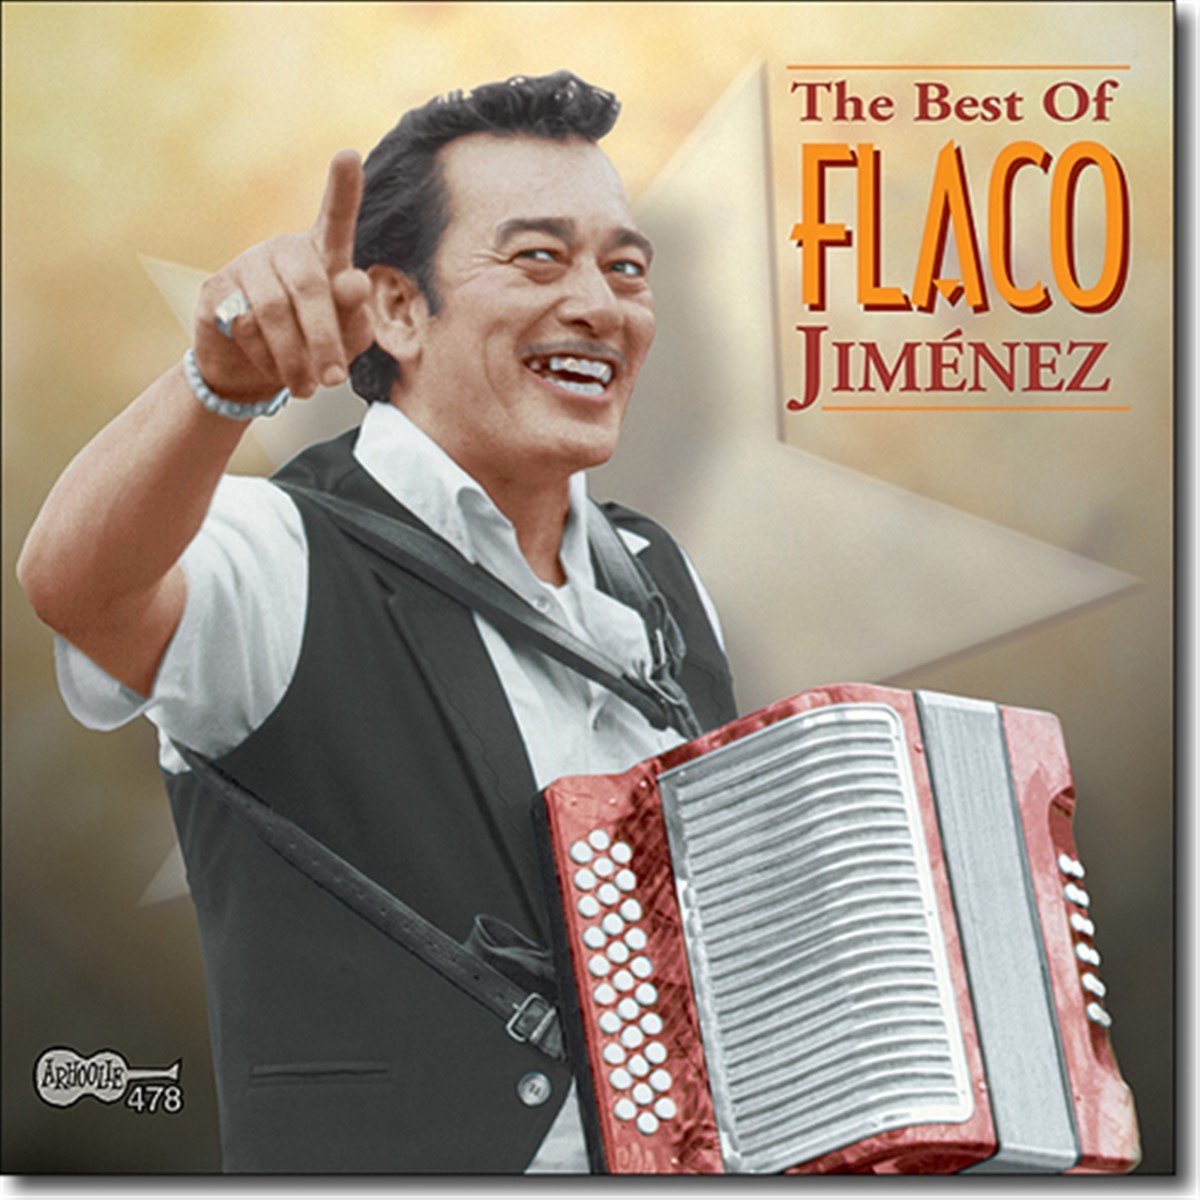 Flaco Jimenez - Best Of (CD) - Flaco Jimenez